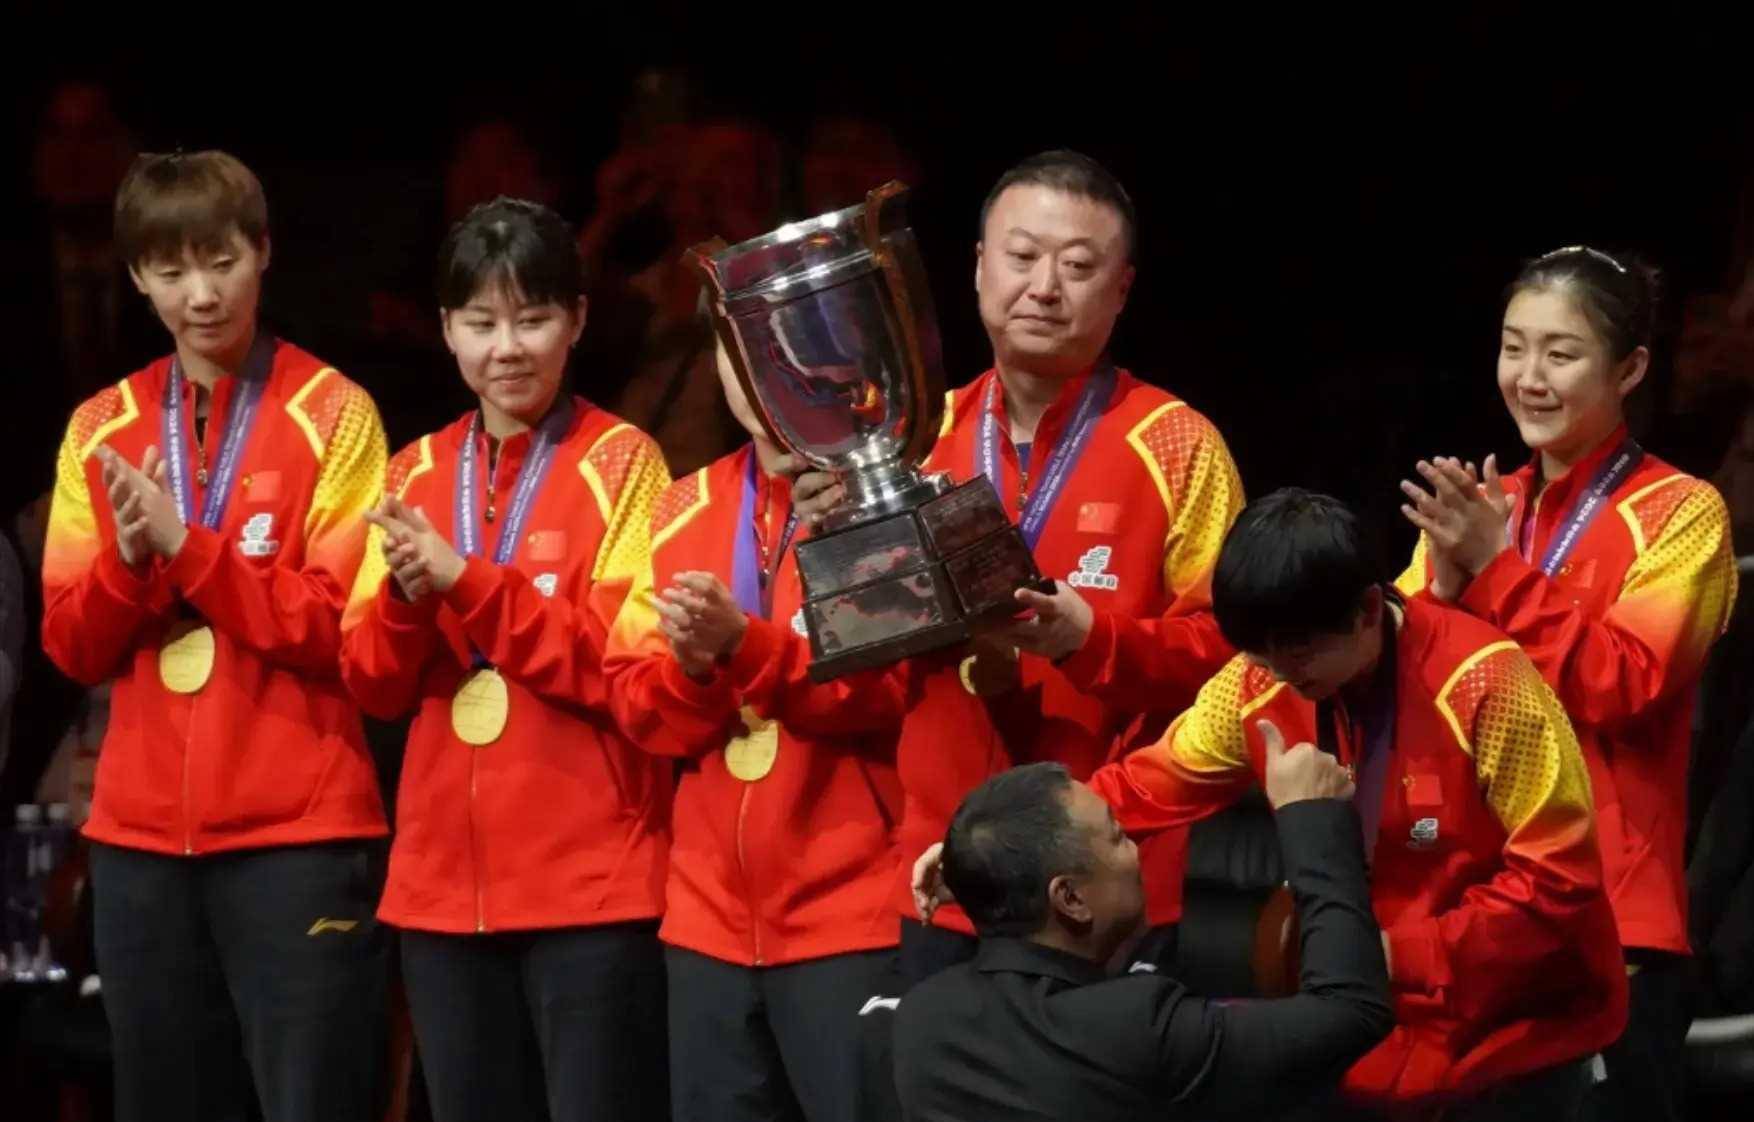 不出意外,巴黎奥运会乒乓球女单冠军,100%在以下6人中产生